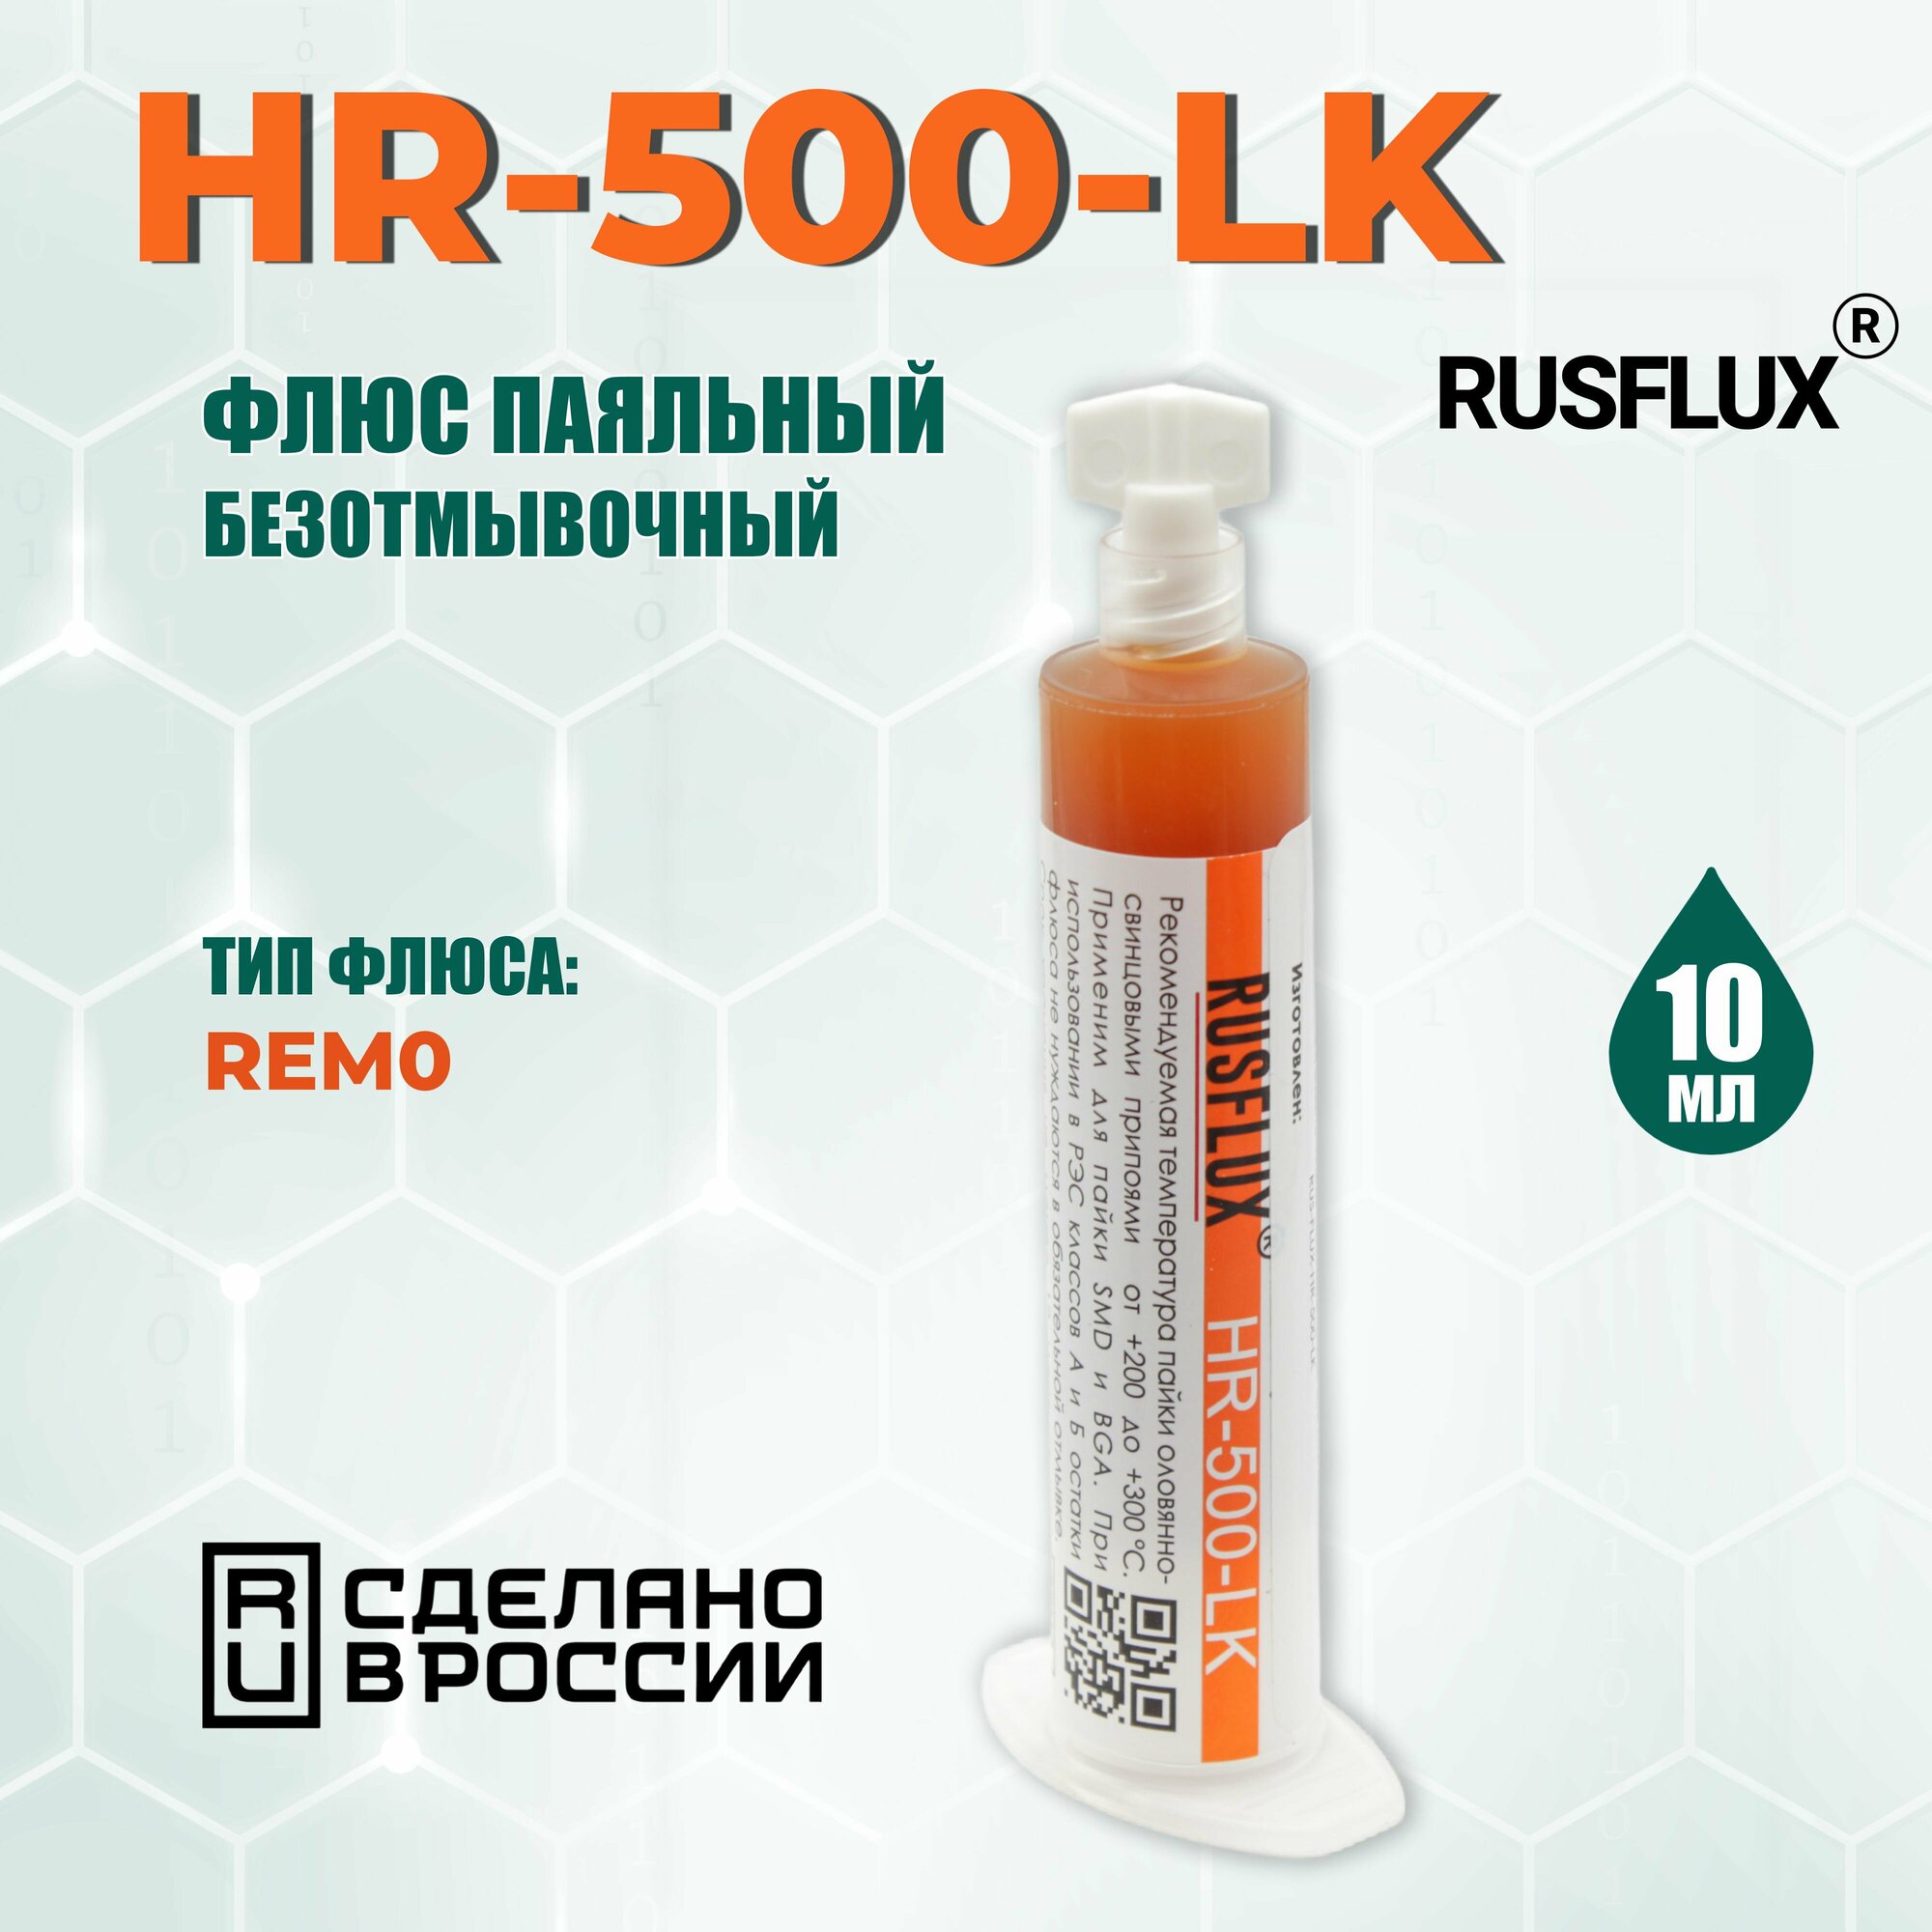 Флюс слабоактивный для пайки Rusflux HR-500-LK (10 мл)